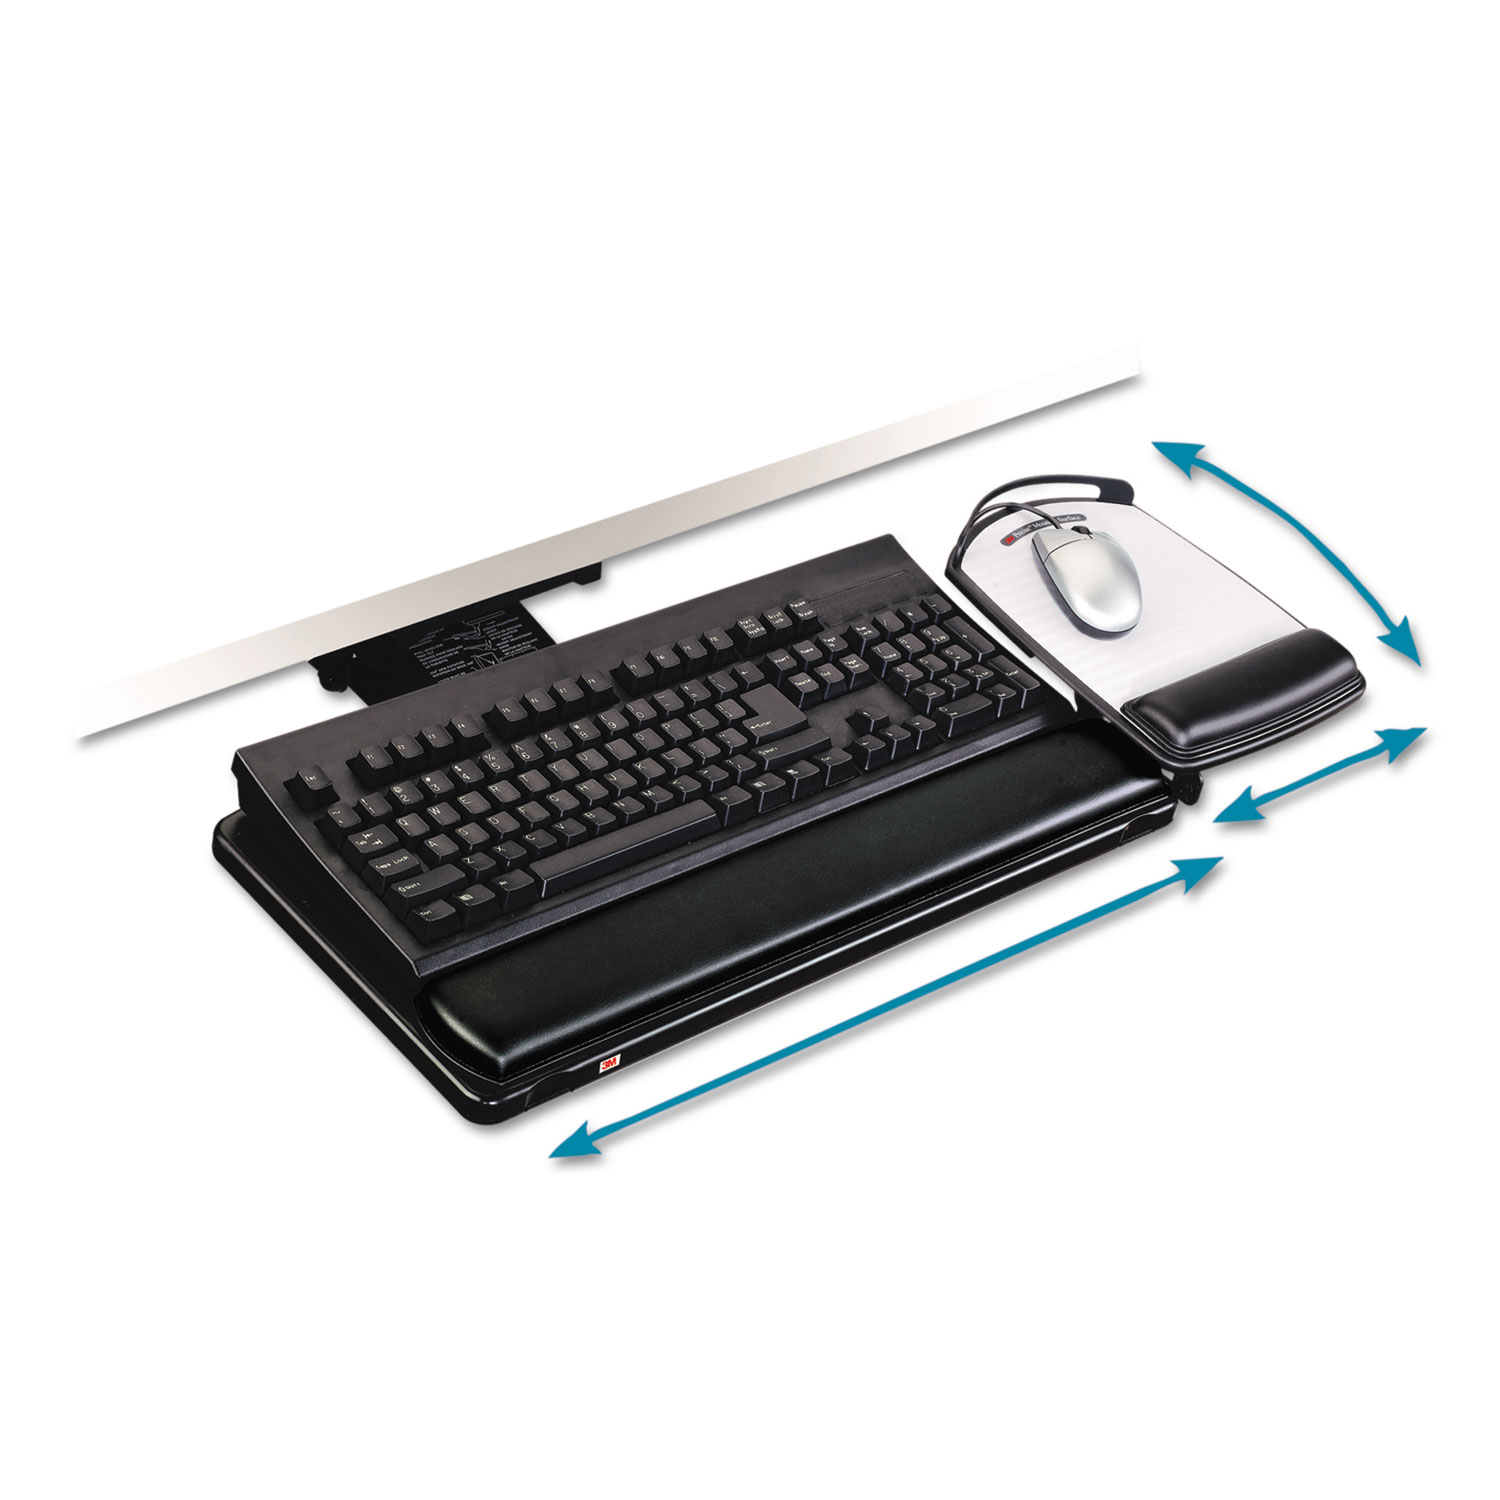  3M AKT80LE Knob Adjust Keyboard Tray With Highly Adjustable Platform, Black (MMMAKT80LE) 